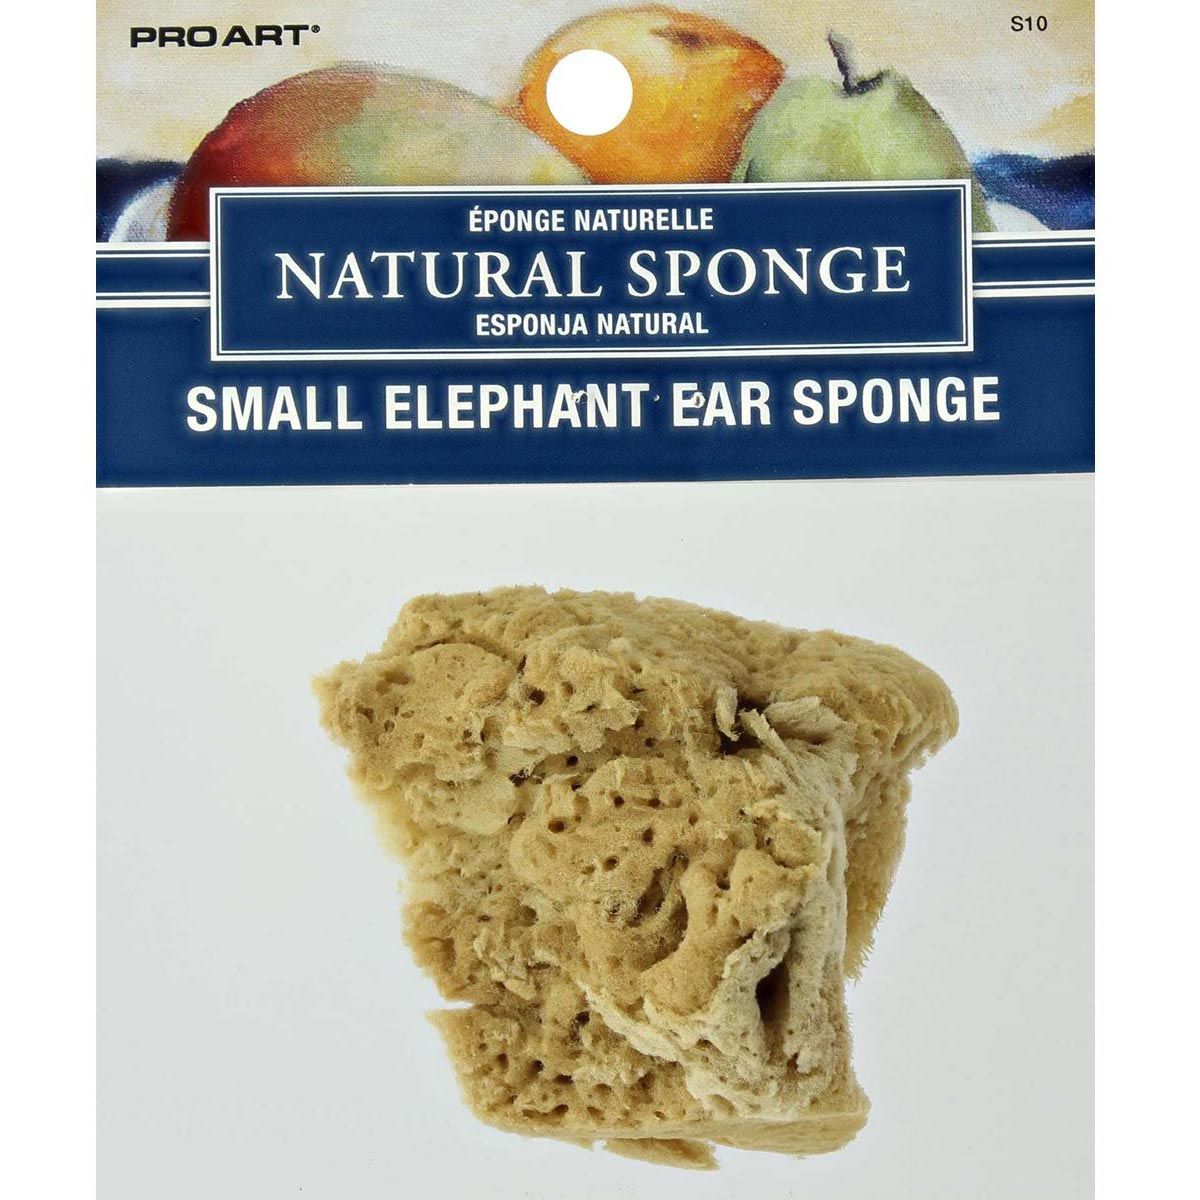 Pro Art Small Elephant Ear Natural Sponge